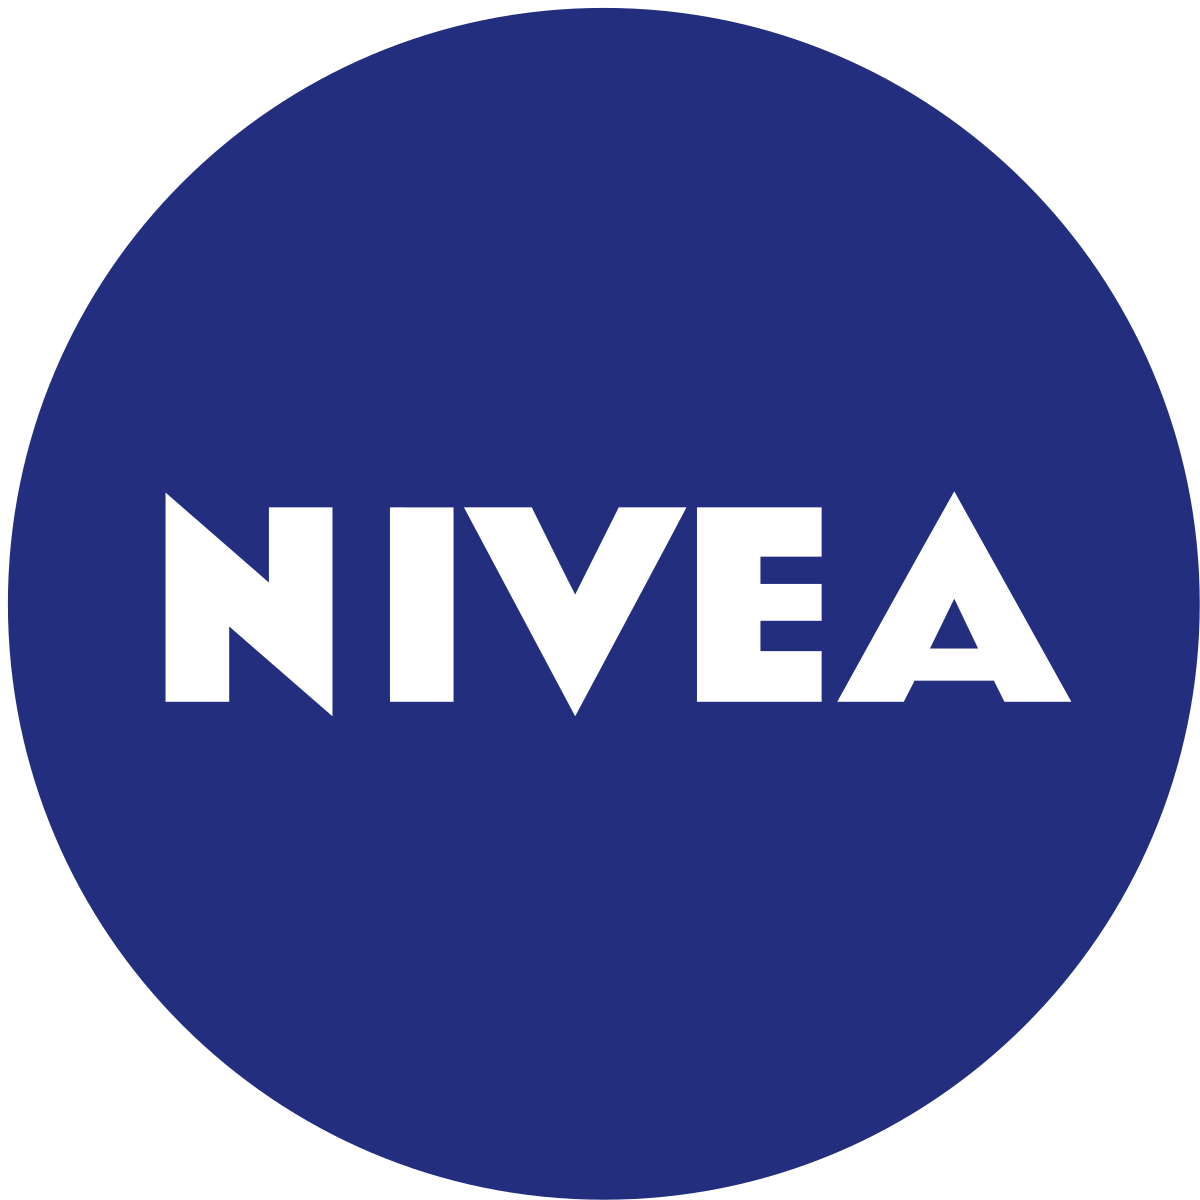 Nước tẩy trang Nivea là 1 trong rất nhiều sản phẩm của thương hiệu Nivea